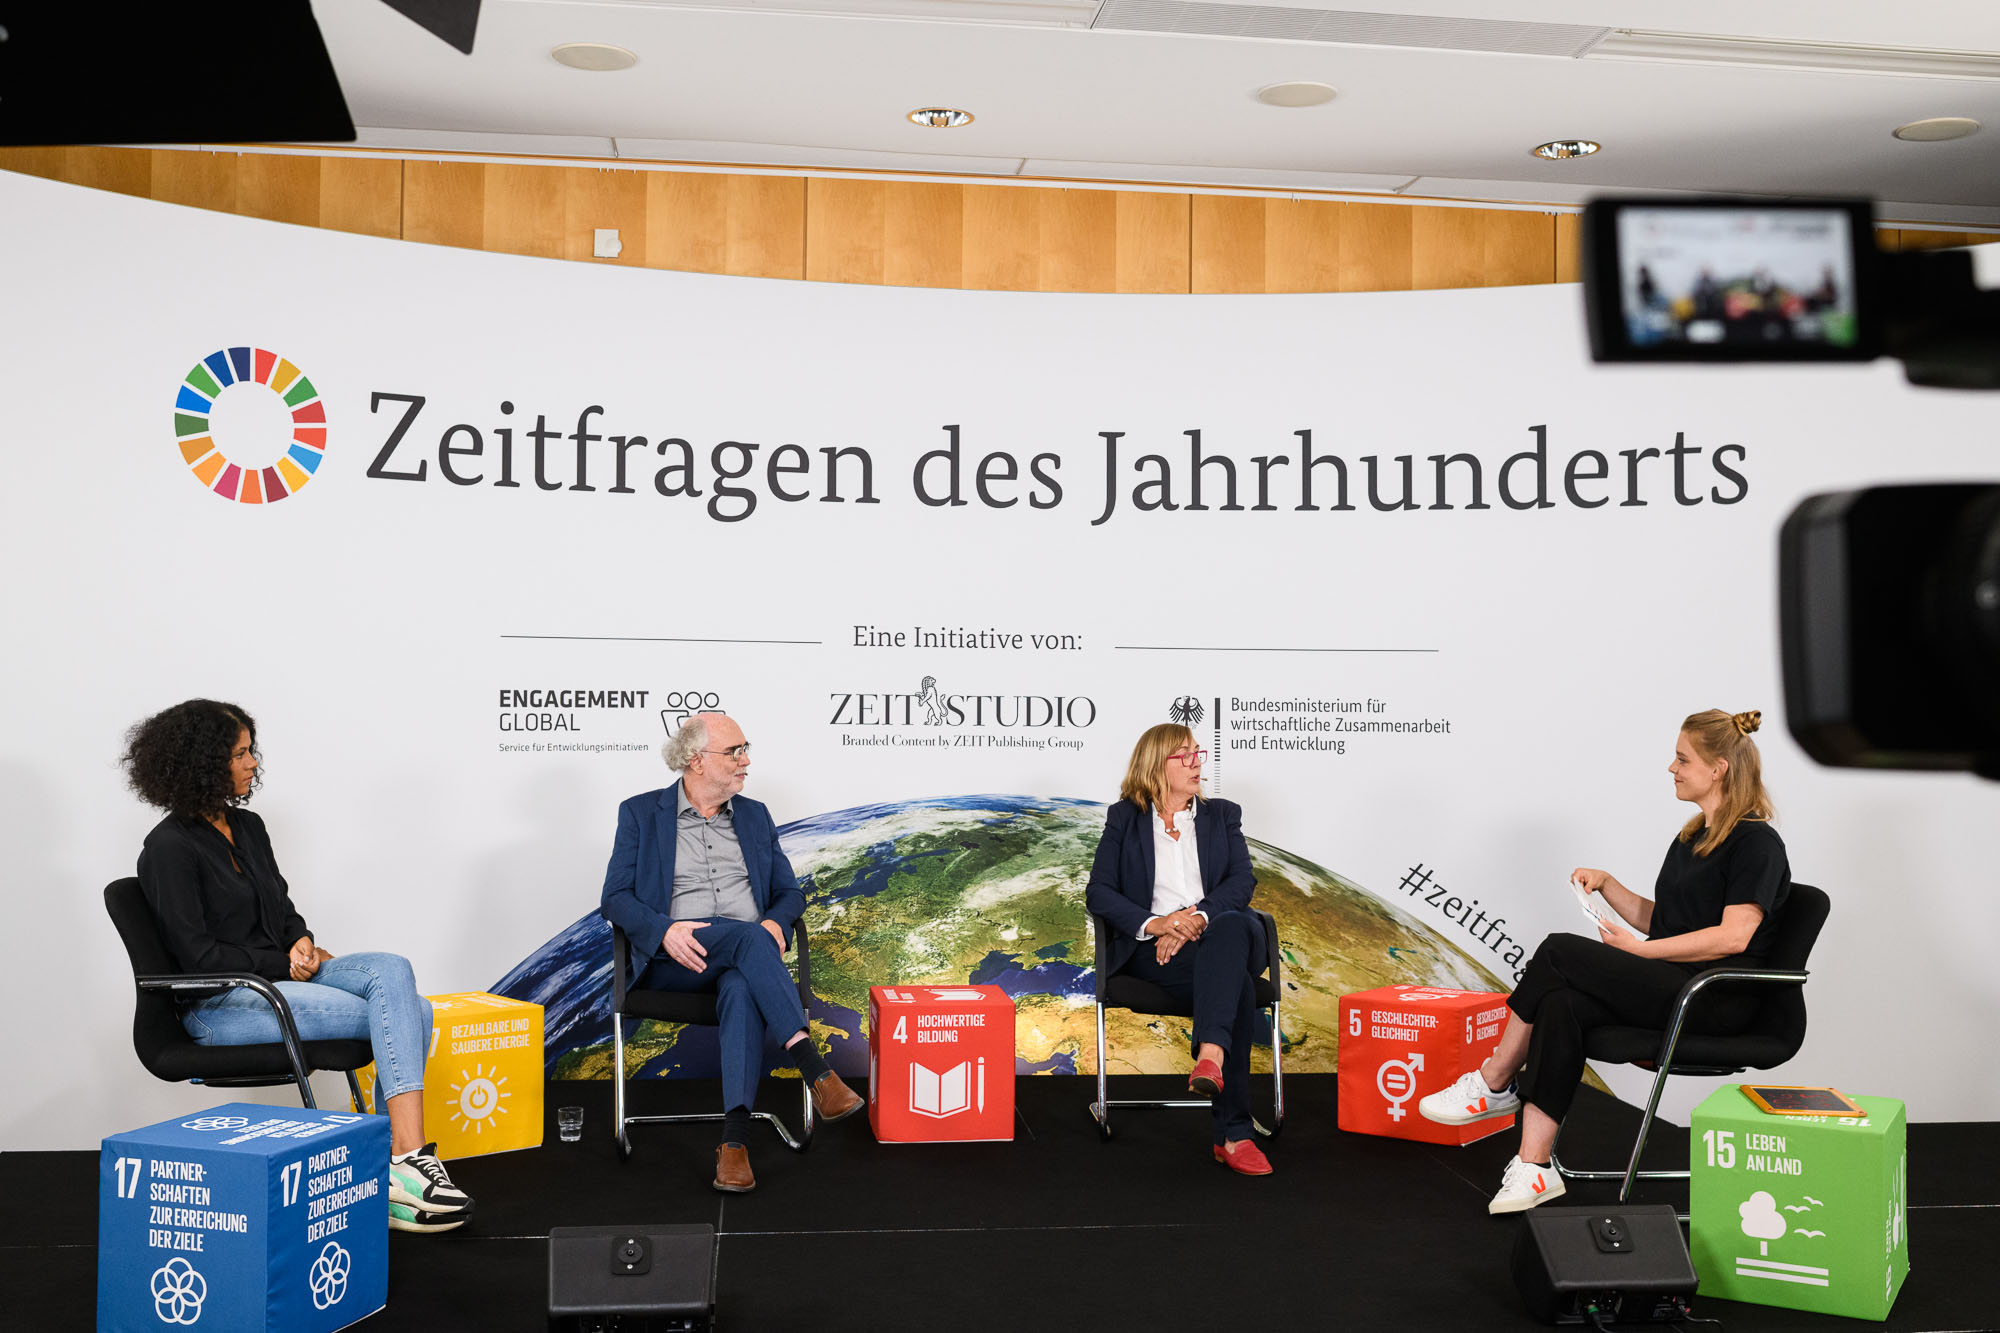 Von links: Jamila Tressel, Schule im Aufbruch, Peter Spiegel, Zukunftsforscher, Kathrin Hartkopf, Sprecherin des Vorstands von Plan International und die Moderatorin Sabine Pusch bei der Diskussion zu den SDGs 4 und 5